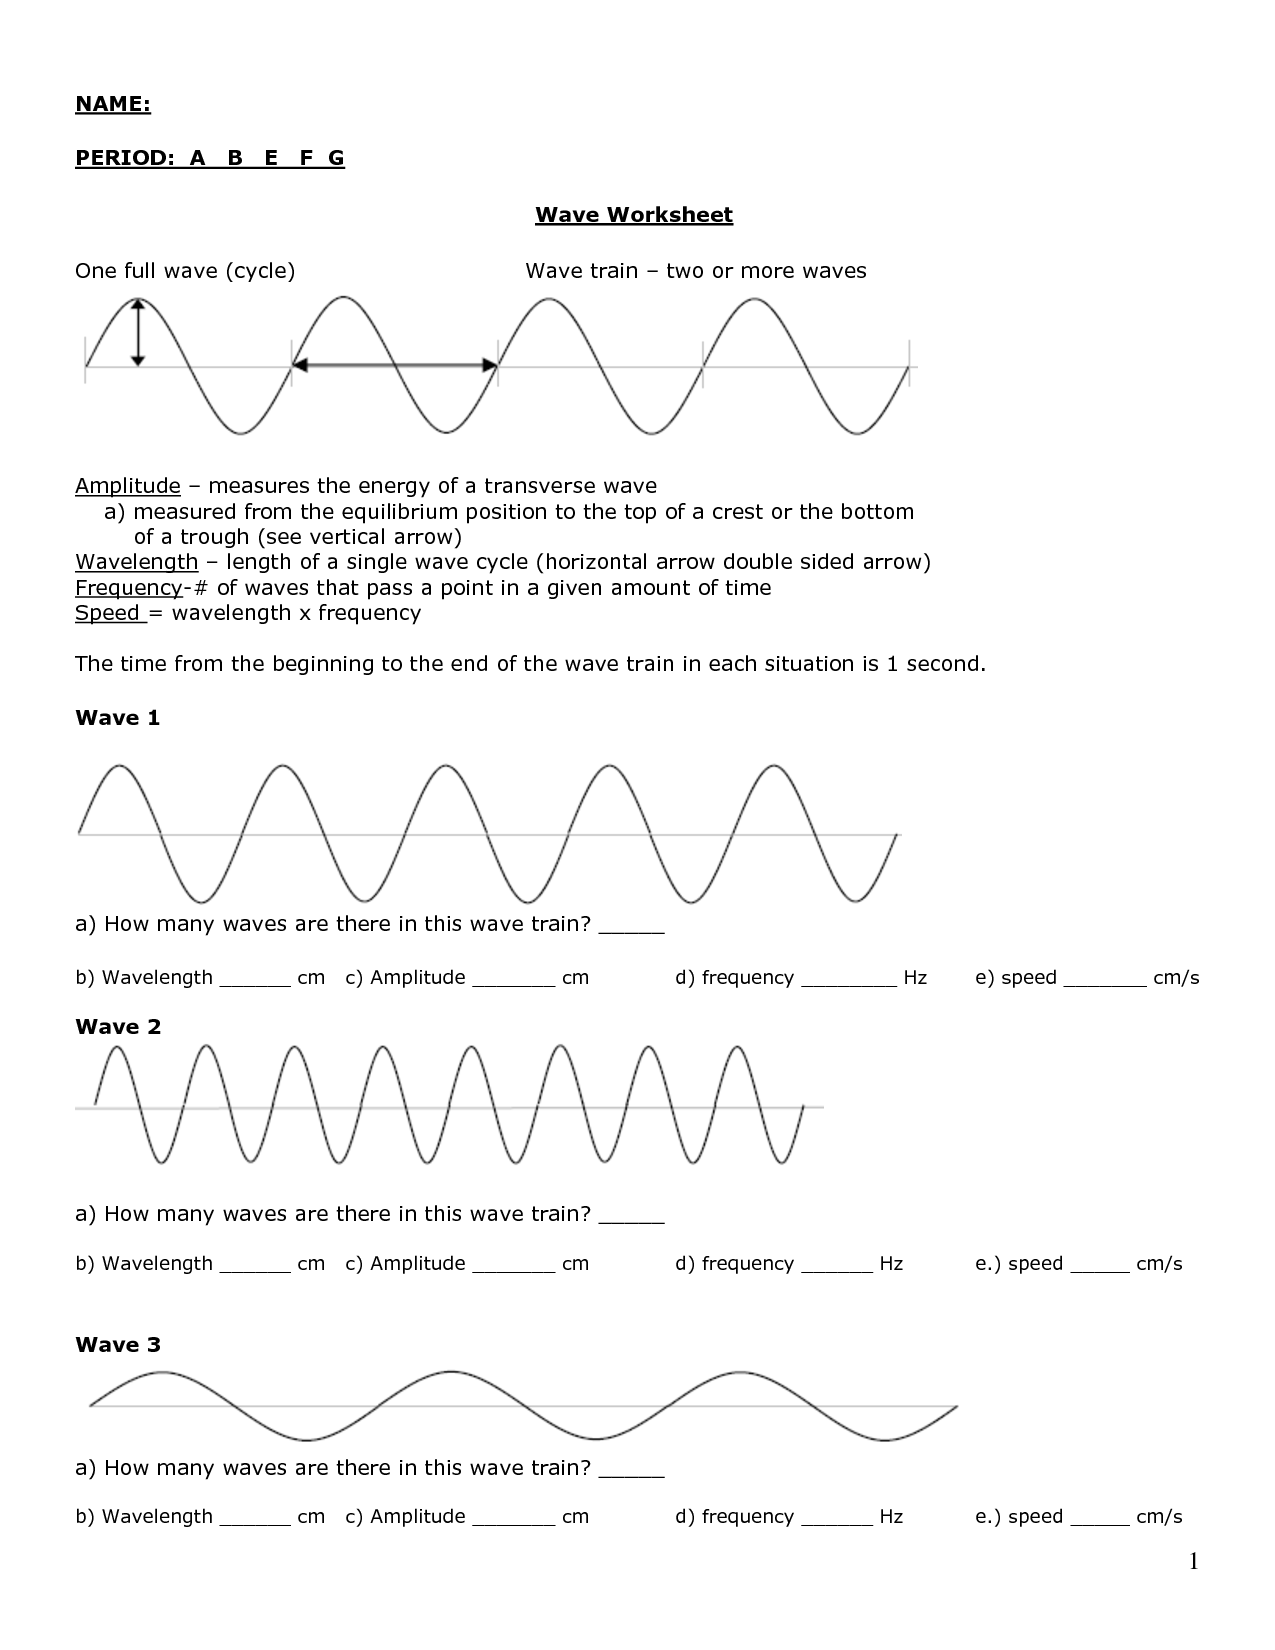 Sound Wave Worksheet Answer Image